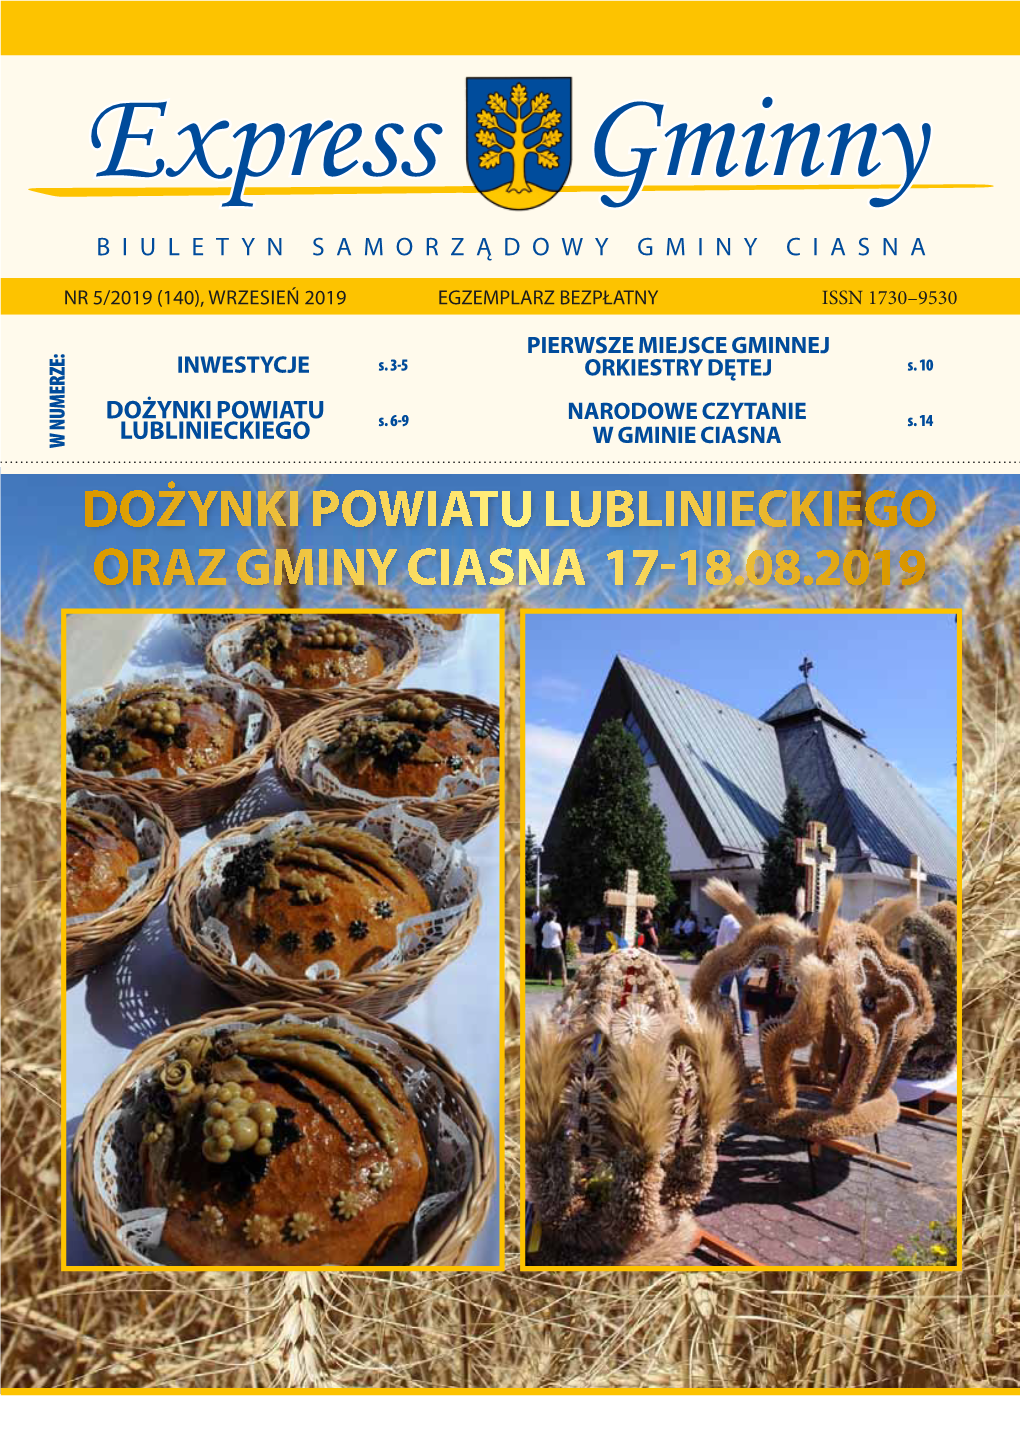 Dożynki Powiatu Lublinieckiego Oraz Gminy Ciasna 17-18.08.2019